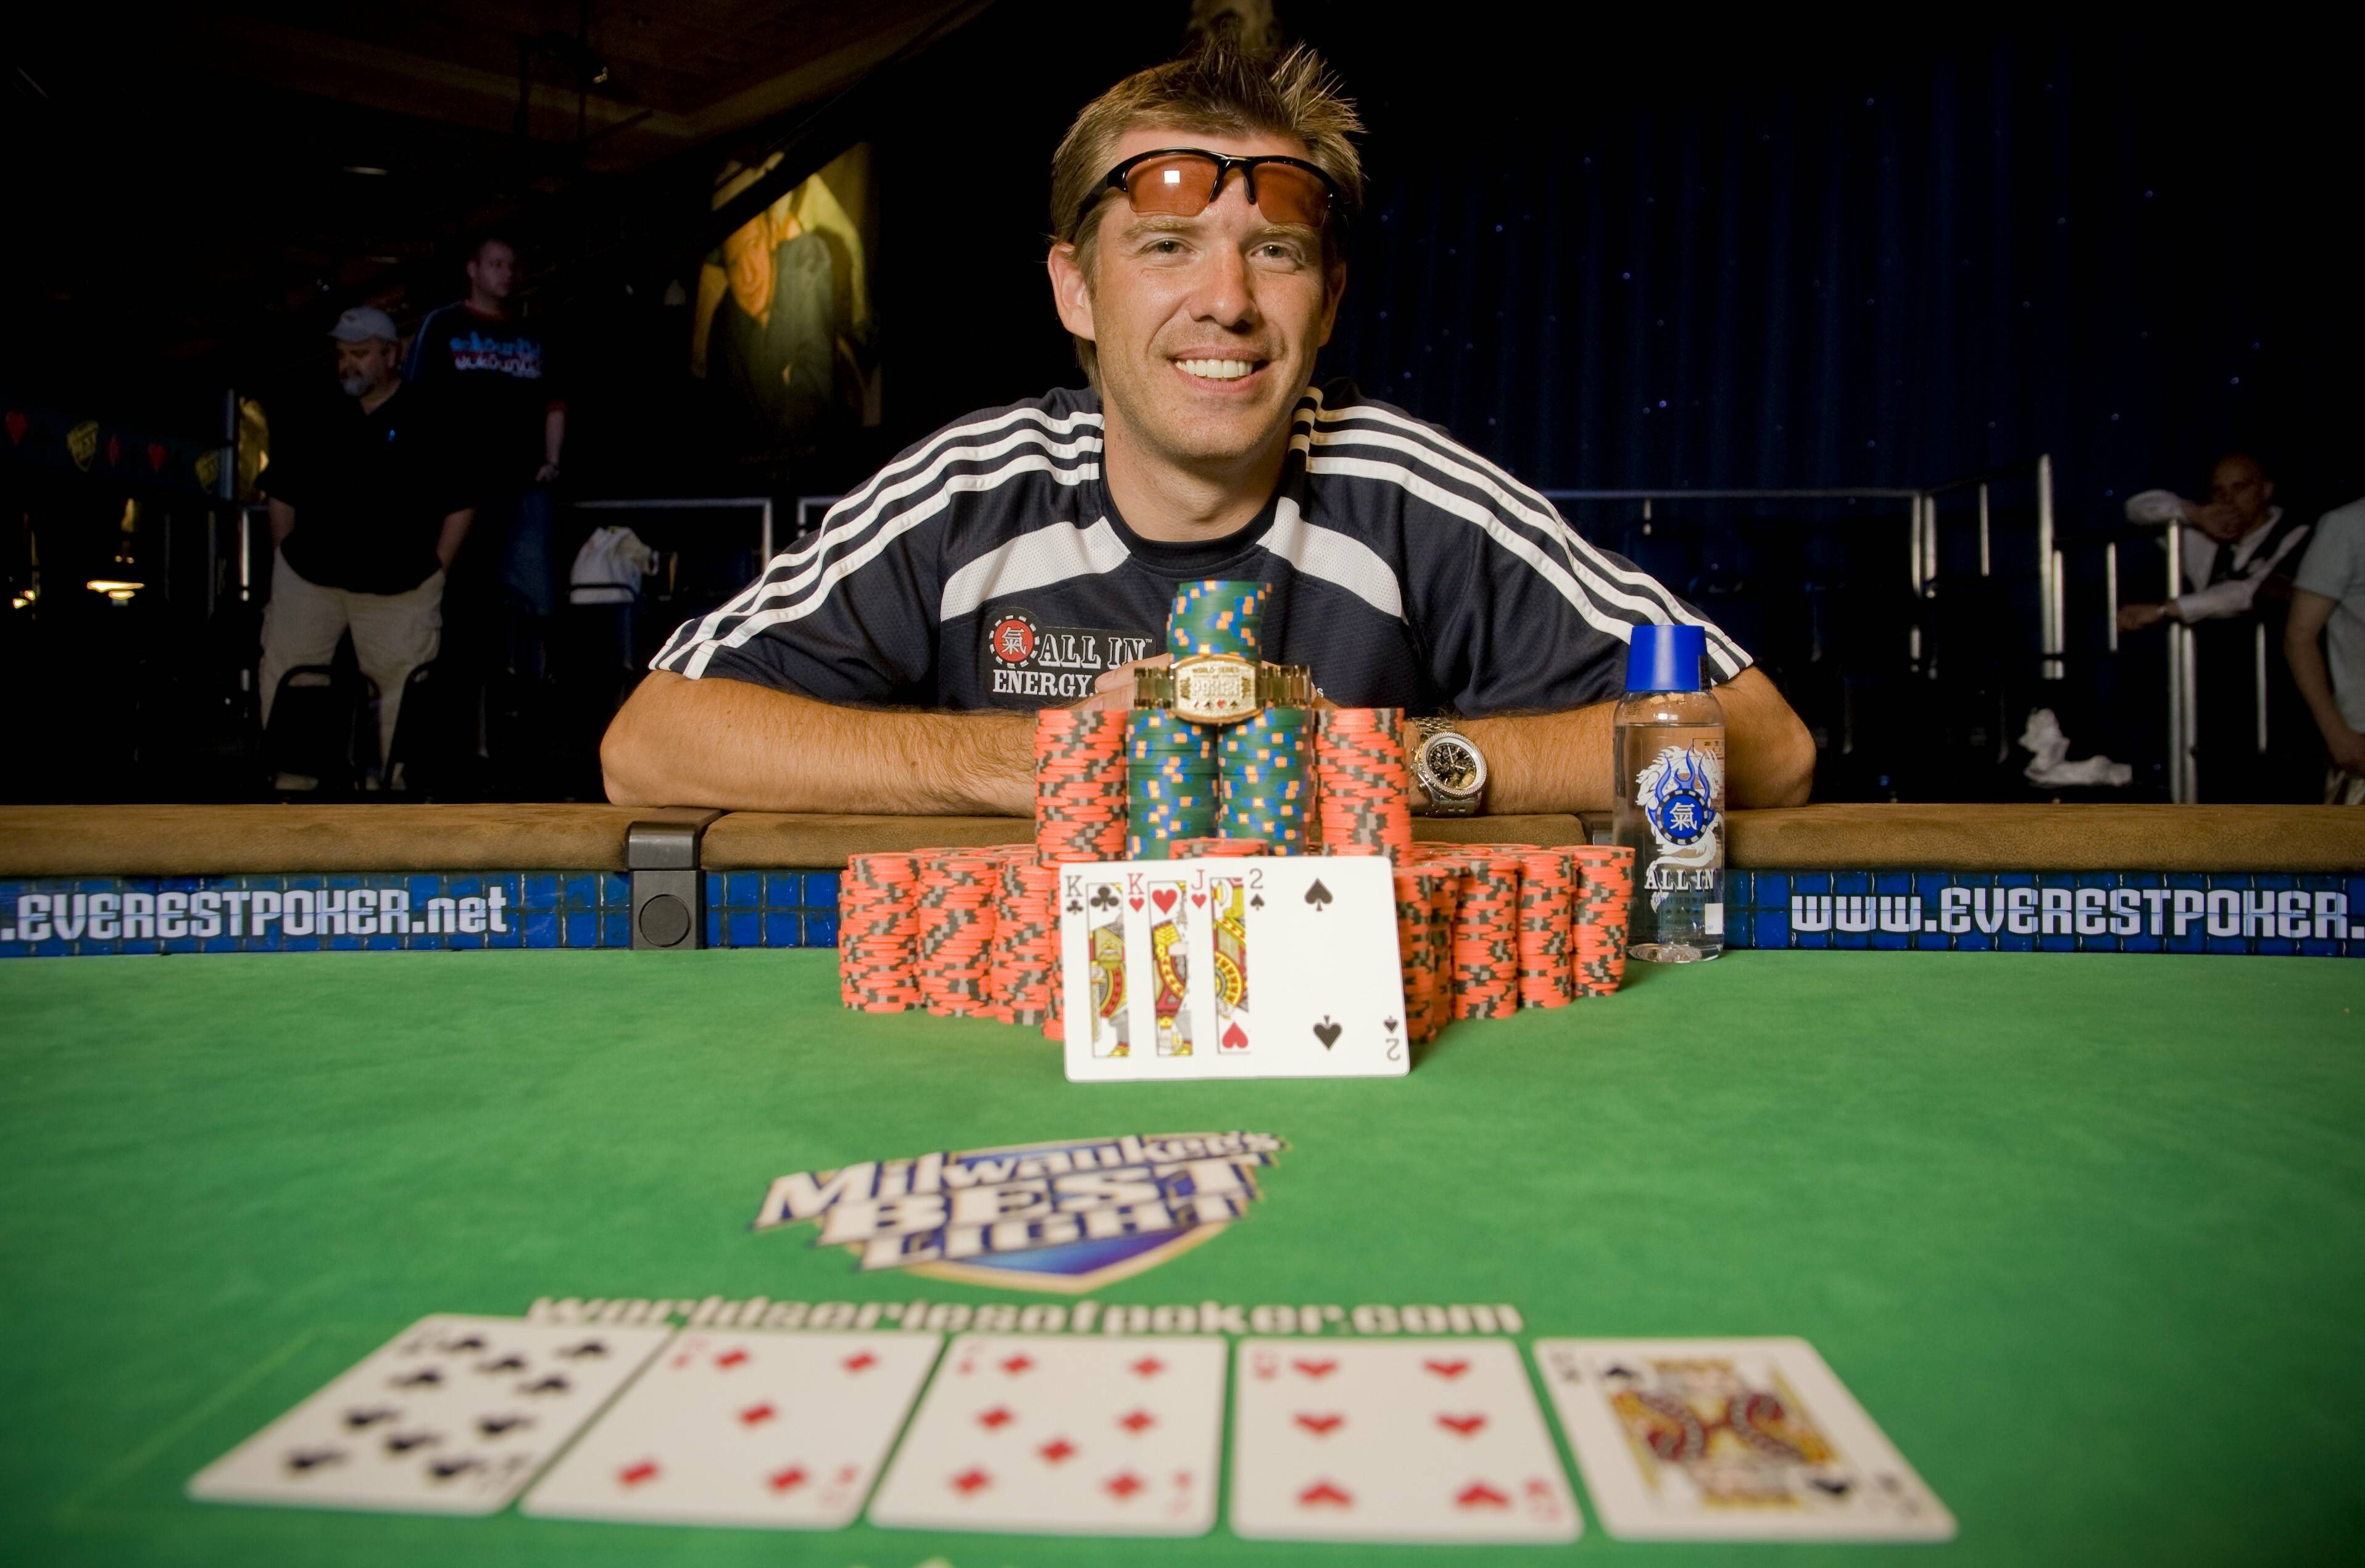 легенды покера, Back to Back Flack, В 1999 году Лейн стал по-настоящему знаменит. В этом году он выиграл первый золотой браслет победителя WSOP на турнире по $3000 Pot Limit Hold’em, где заработал 224 000 долларов.покер, азартные игры, карточные игры, мастера покера, профи, легендарные игроки, Лейн Флэк, Layne Flack, биографии